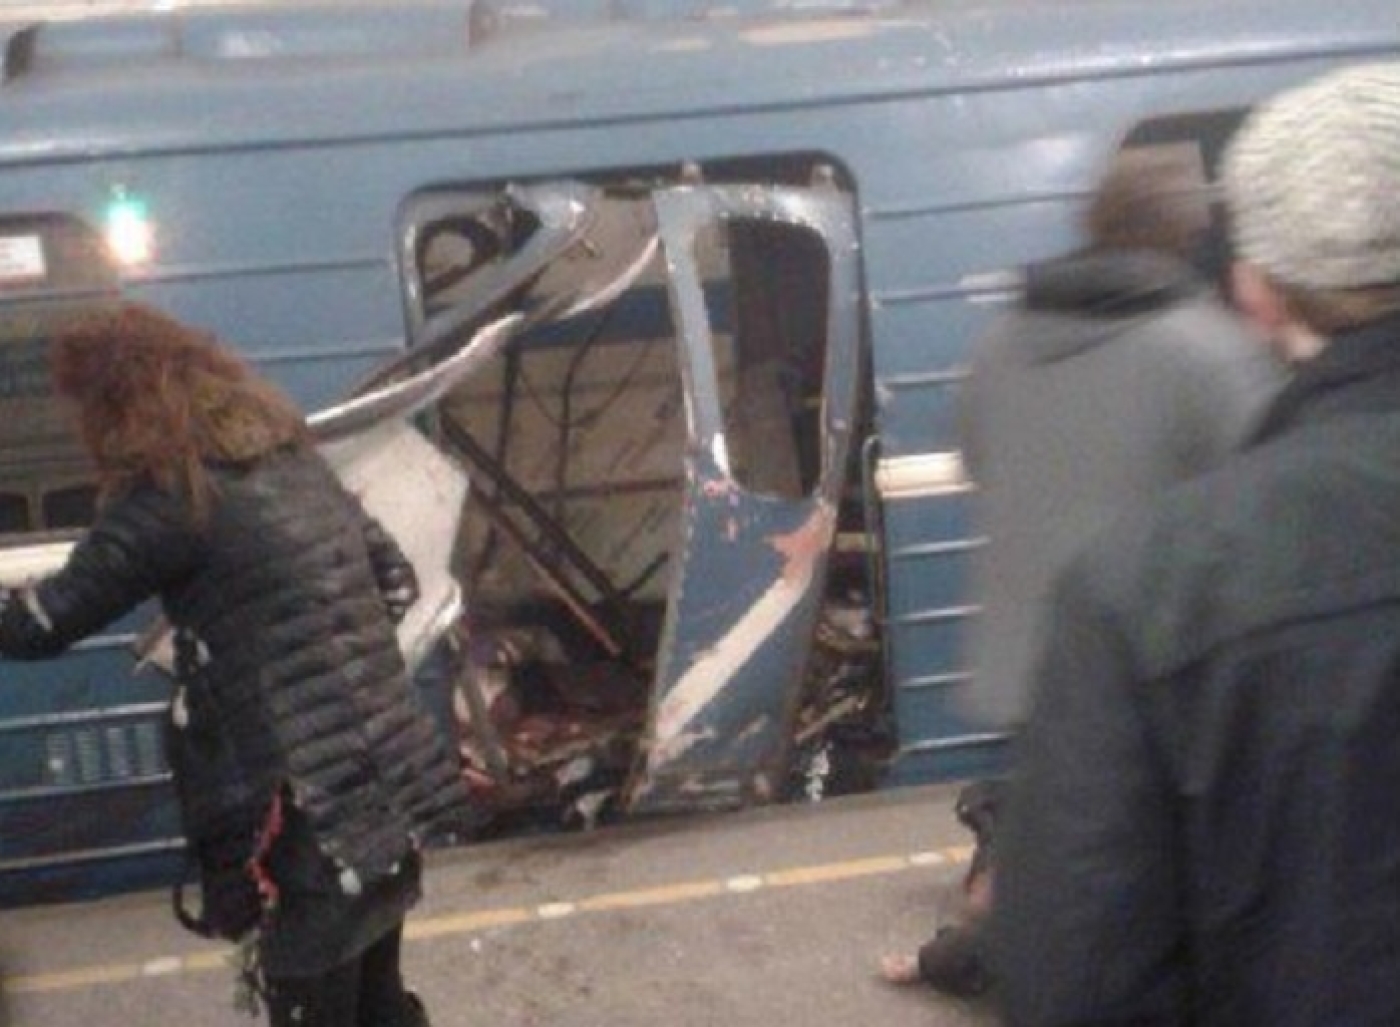 St Petersburg metro blast blamed on Kyrgyz suicide bomber | Middle East Eye